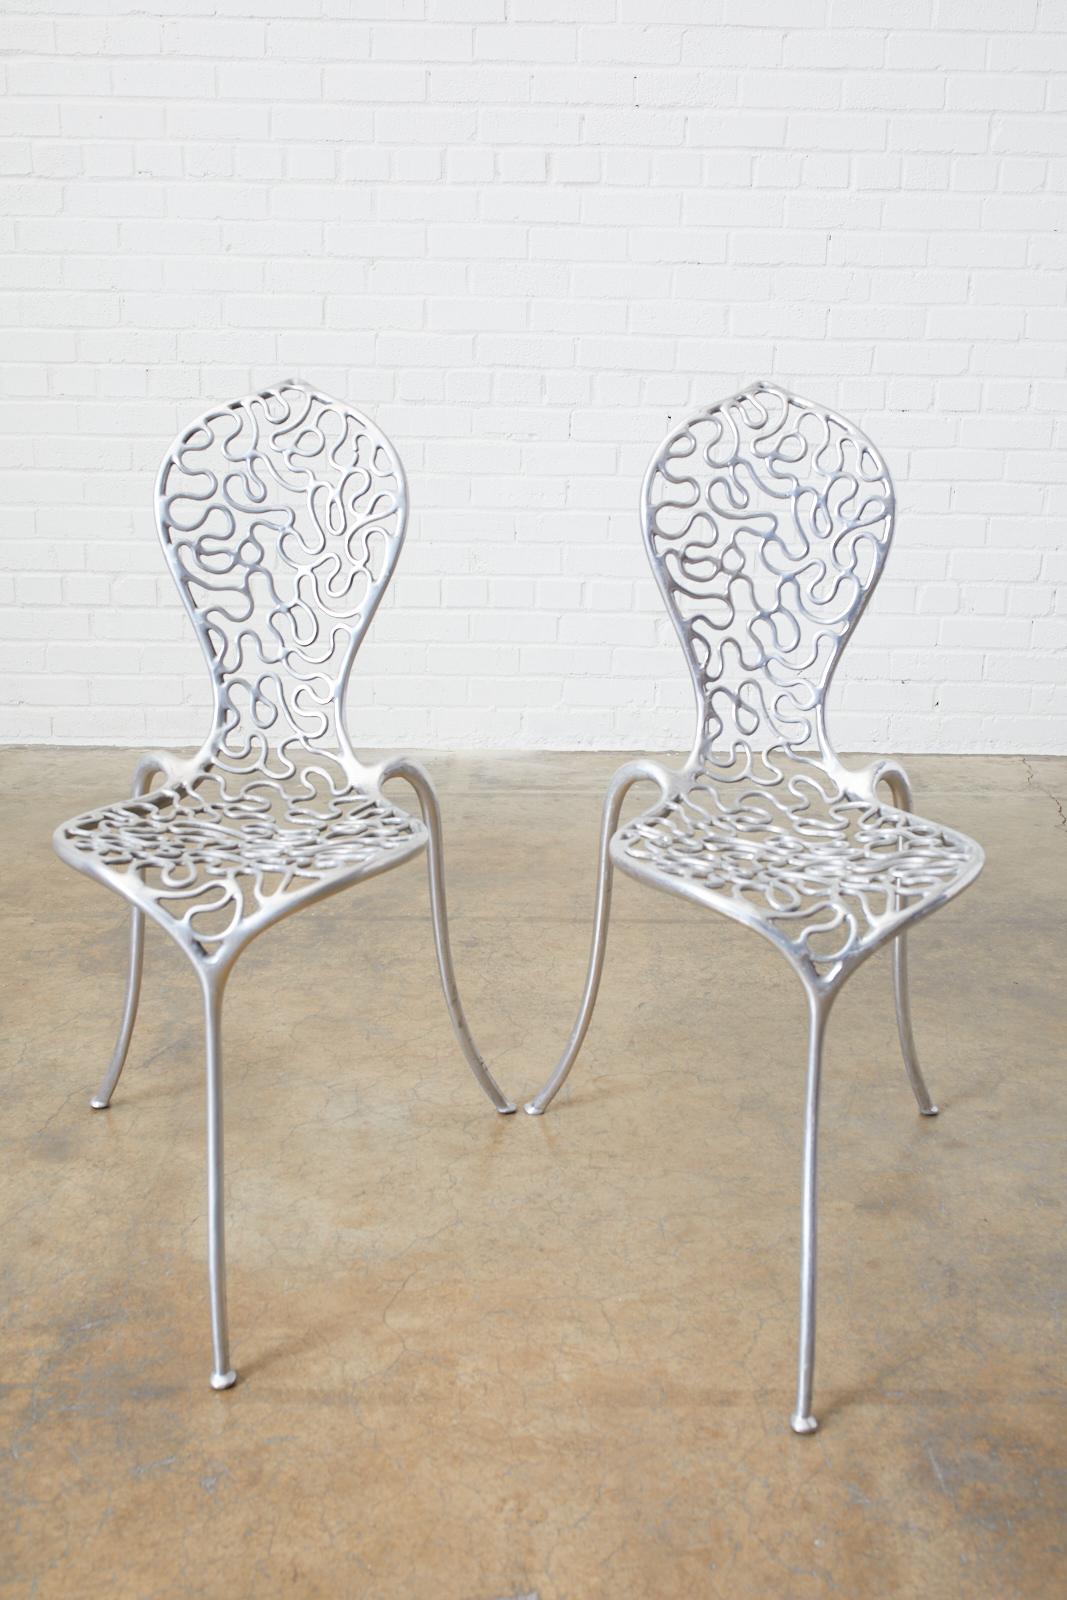 Rare ensemble de cinq chaises cacahuètes en fonte d'aluminium conçues par Stéphane Rondel (français). Rondel est un designer parisien qui réside aujourd'hui en Nouvelle-Zélande. Ces chaises ont été fabriquées en 1991 avec une production très limitée